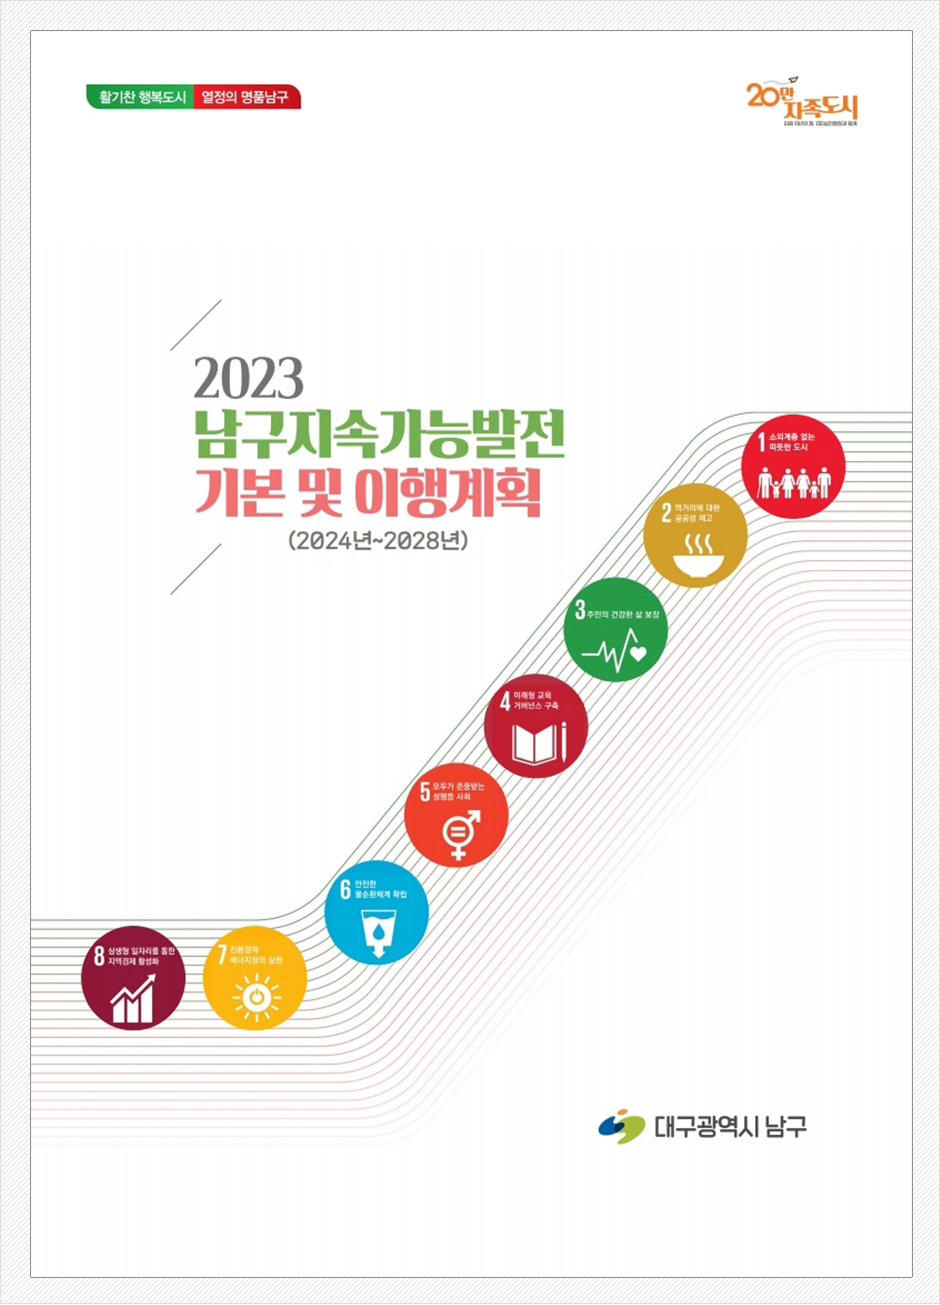 2023 남구지속가능발전 기본 및 이행계획, 2024년 ~ 2028년, 대구광역시 남구